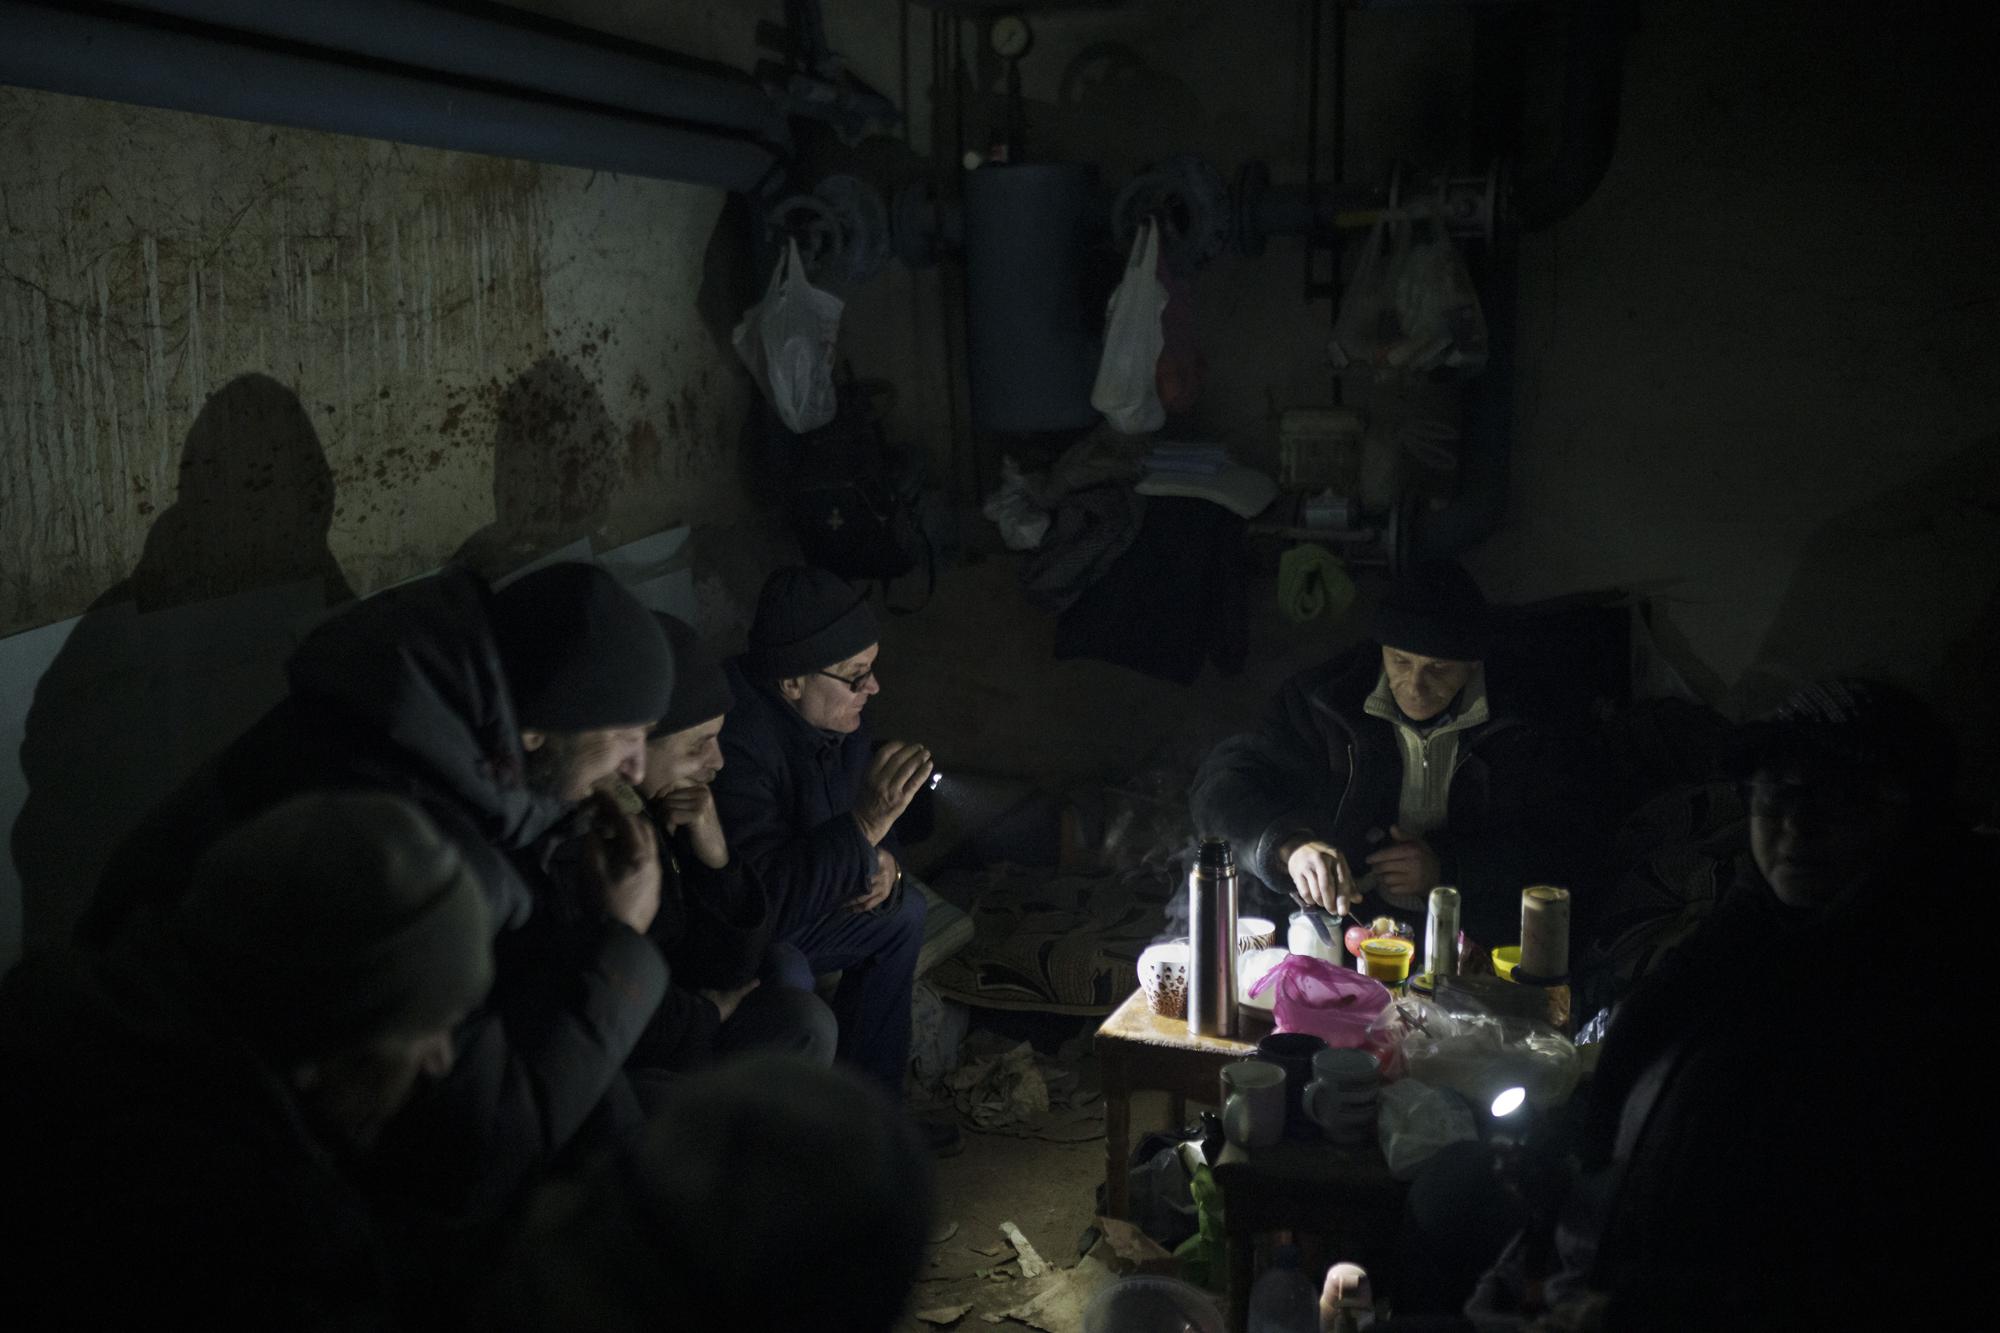 100 ngày chiến sự ở Ukraine: Lặng người trước những bức ảnh vừa đau thương vừa kiên cường - Ảnh 10.